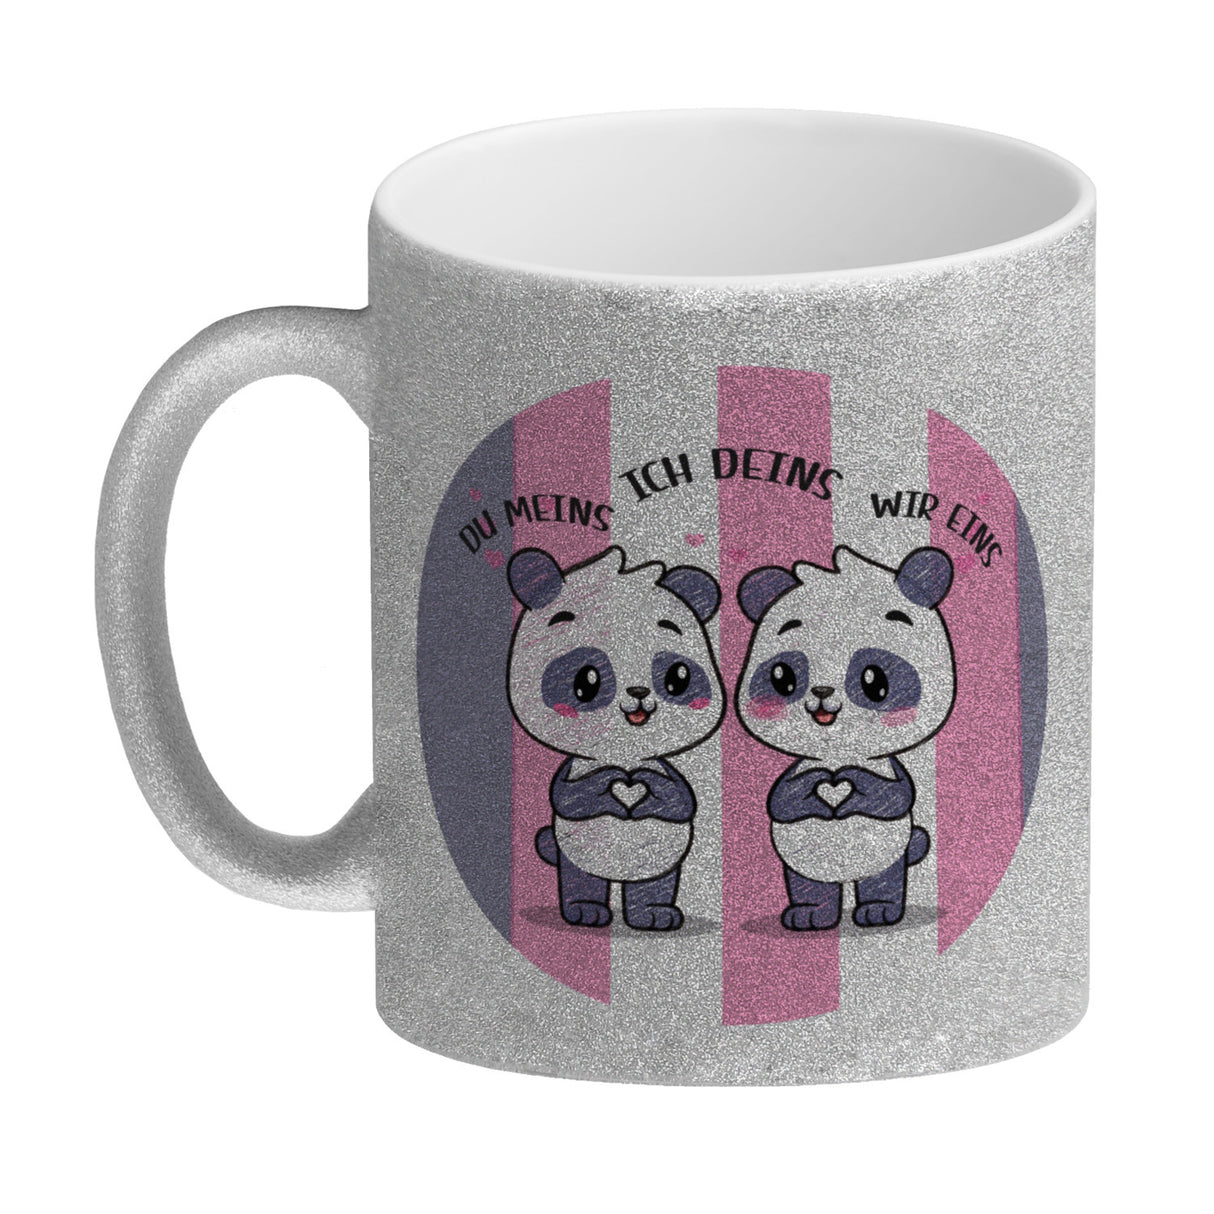 Panda Kaffeebecher mit Spruch Du meins ich deins wir eins